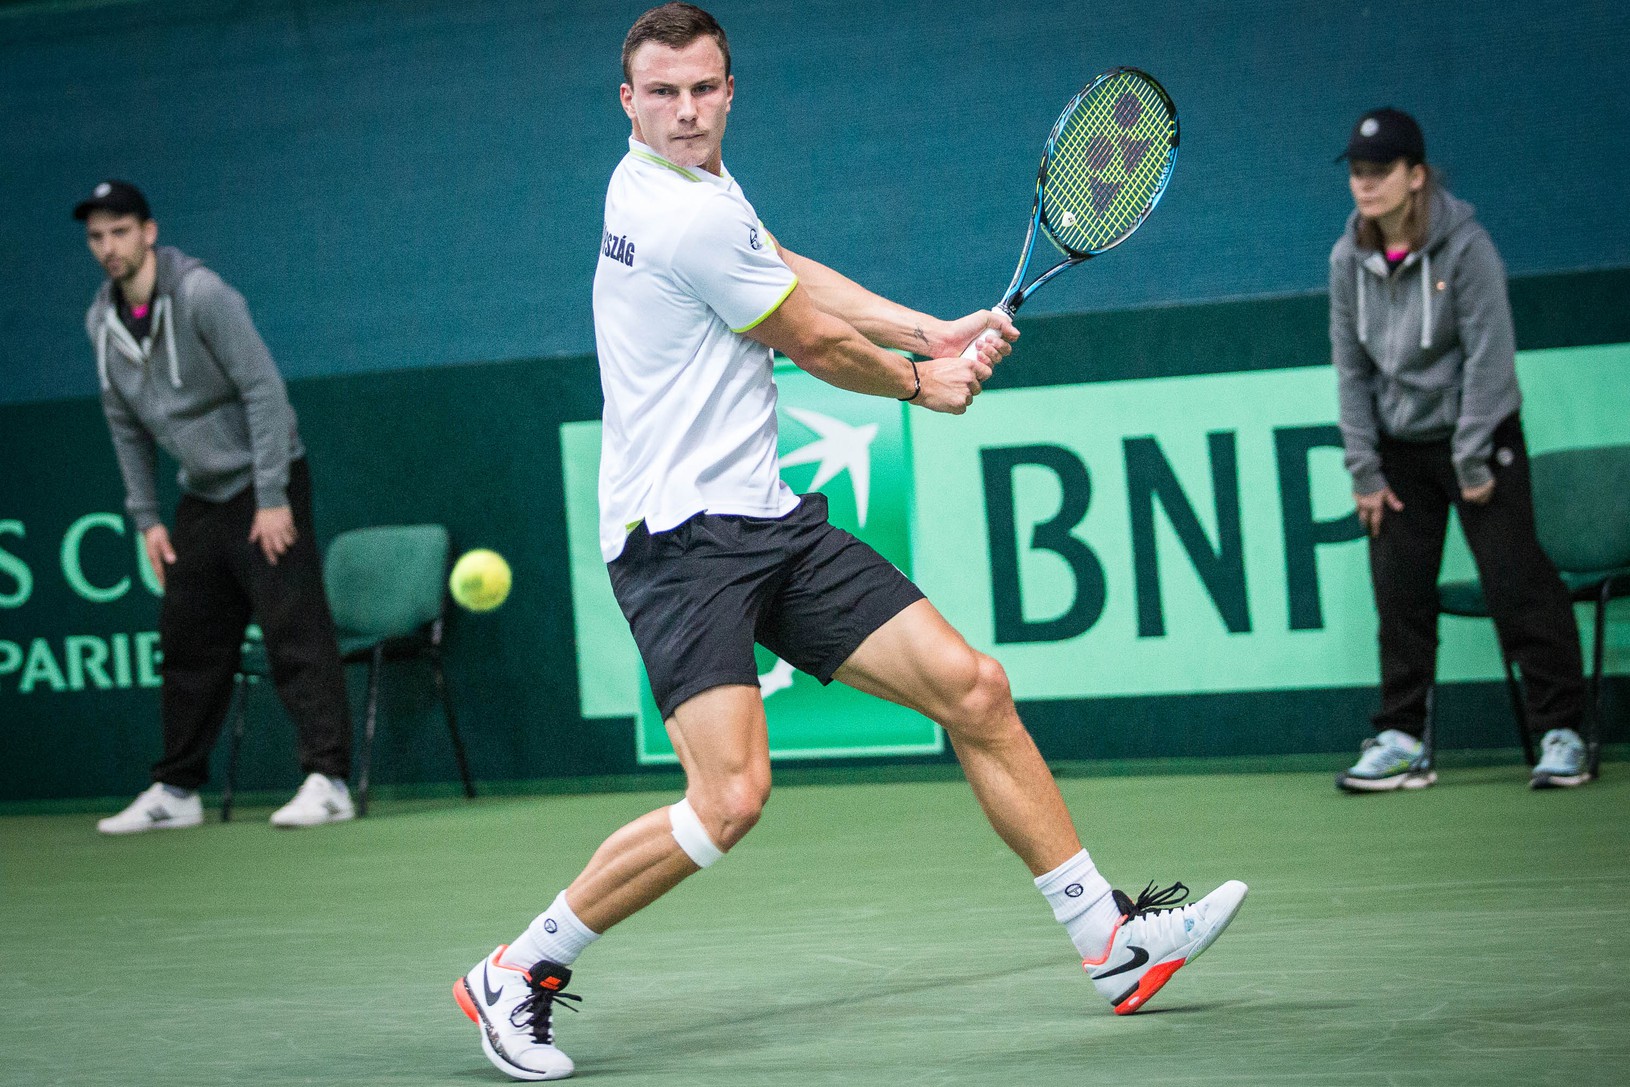 Maďarský tenisový reprezentant Márton